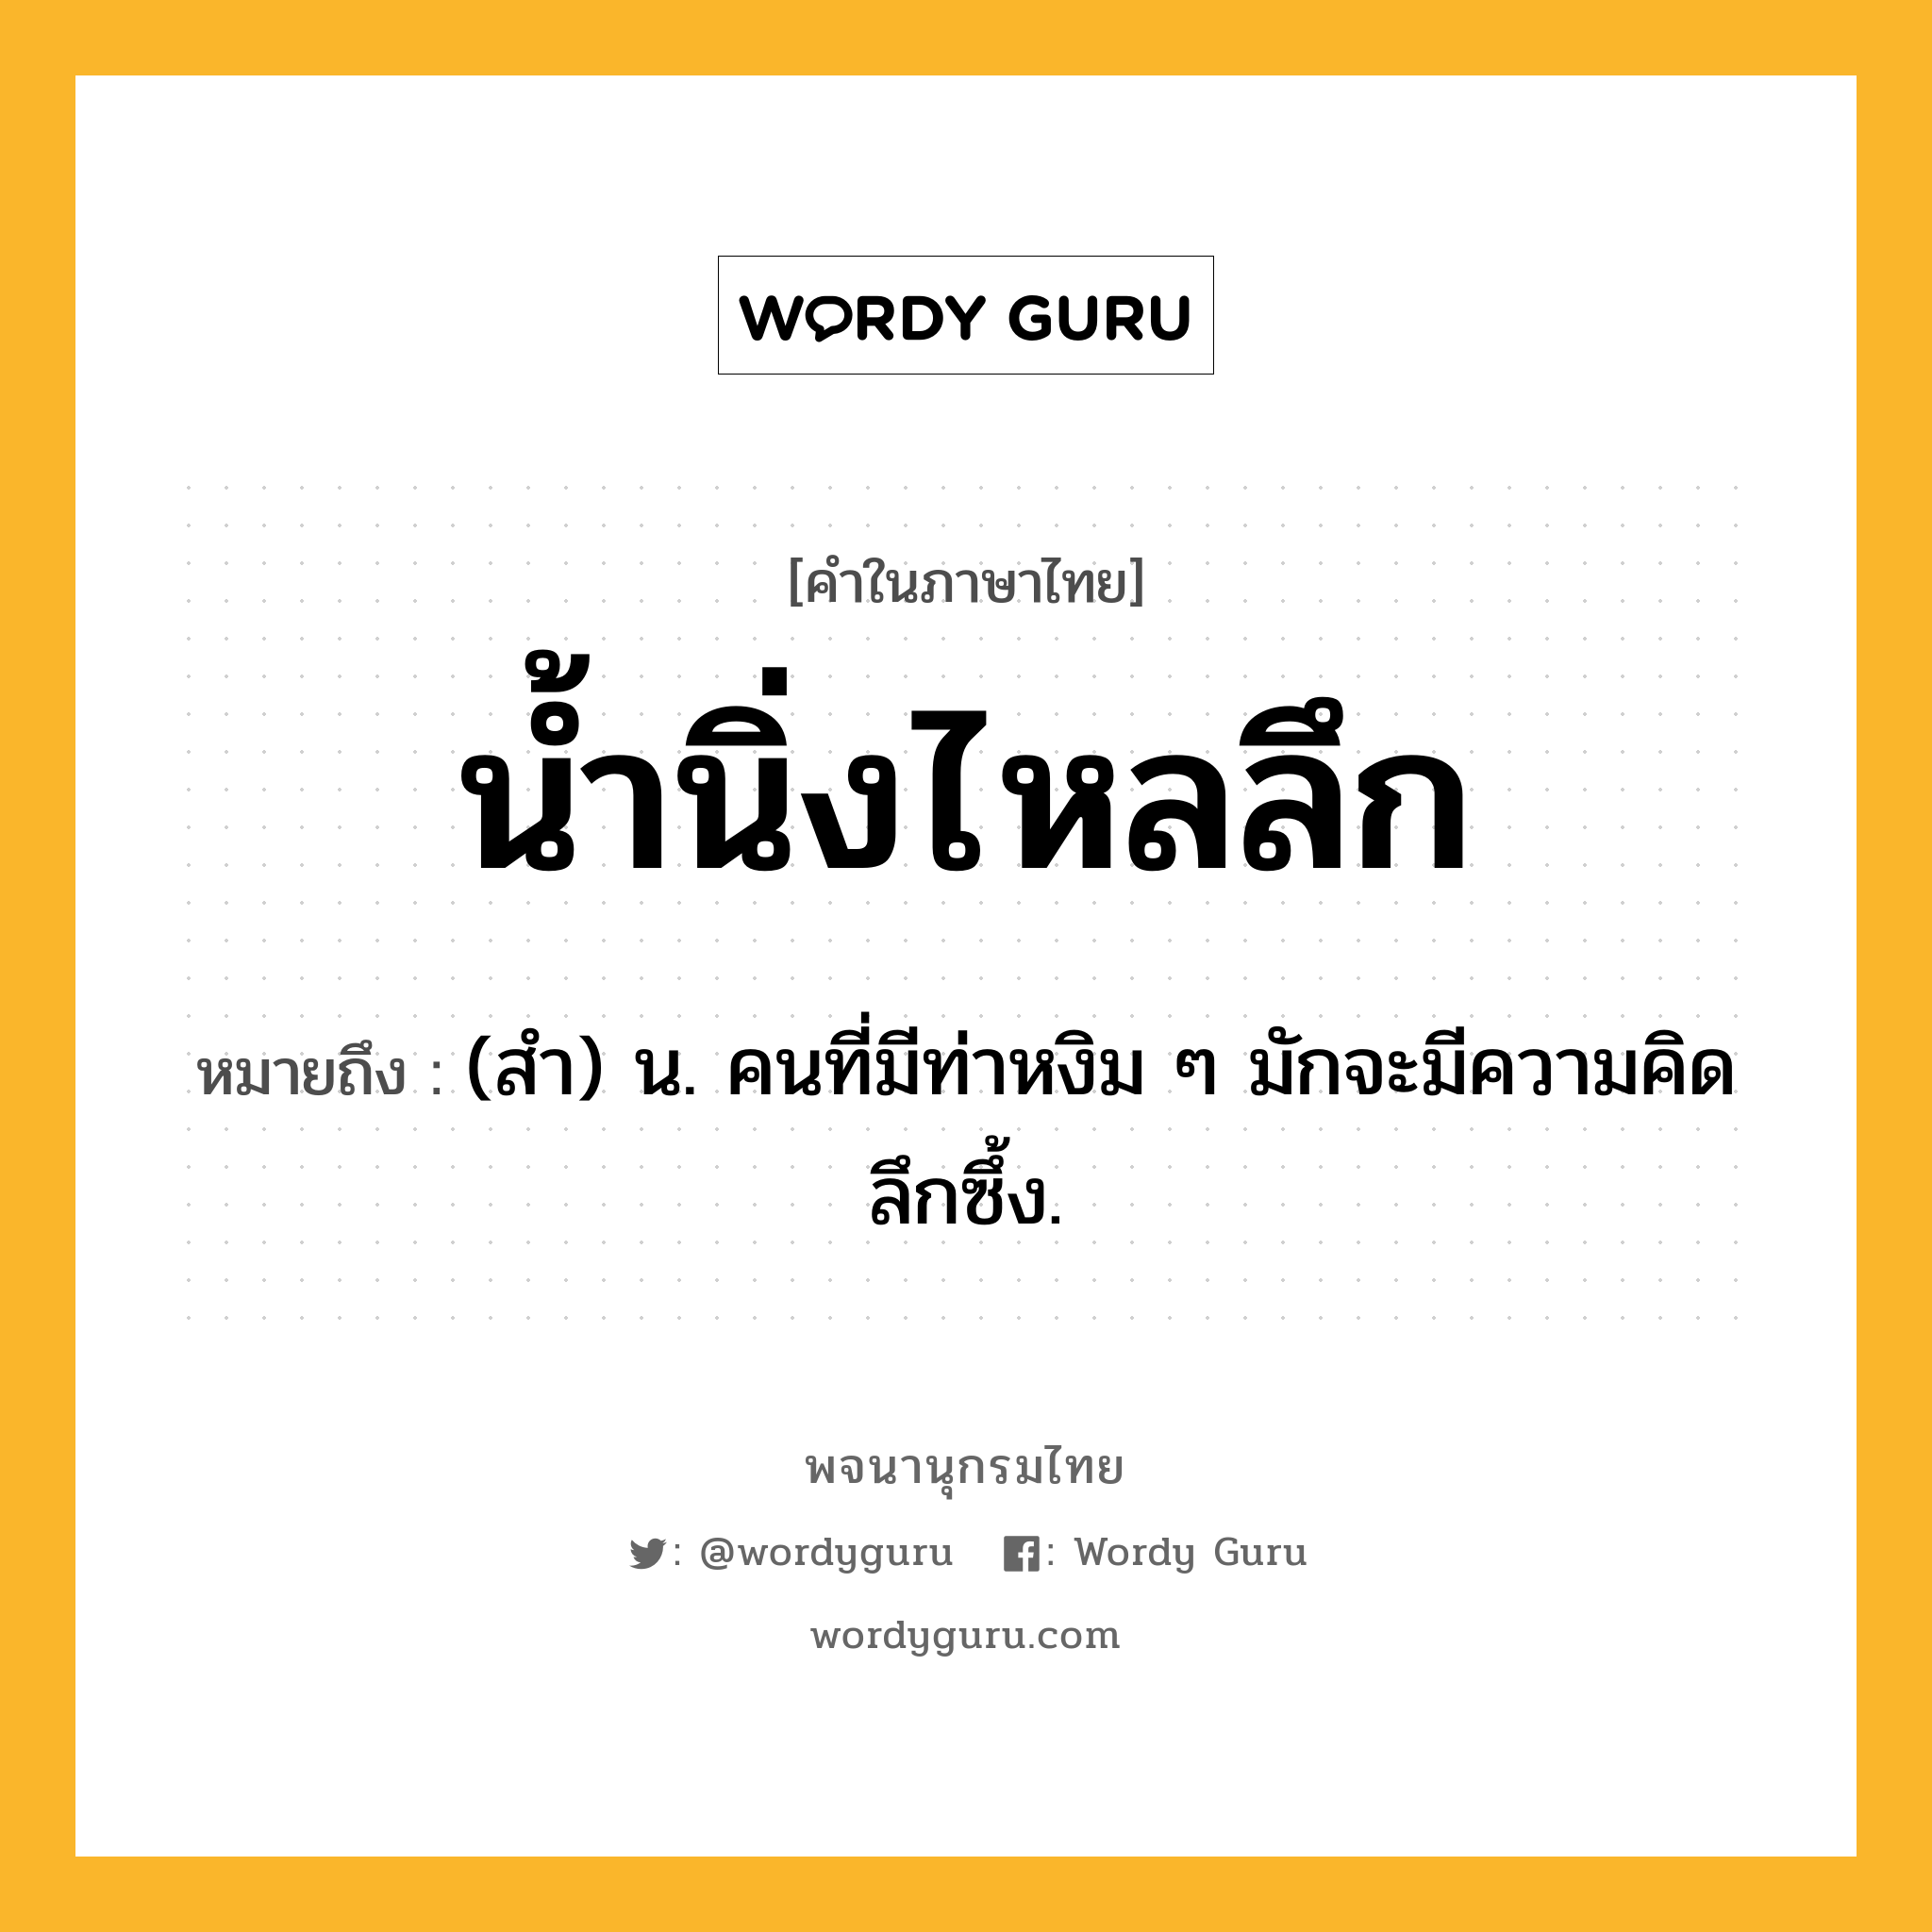 น้ำนิ่งไหลลึก หมายถึงอะไร?, คำในภาษาไทย น้ำนิ่งไหลลึก หมายถึง (สํา) น. คนที่มีท่าหงิม ๆ มักจะมีความคิดลึกซึ้ง.